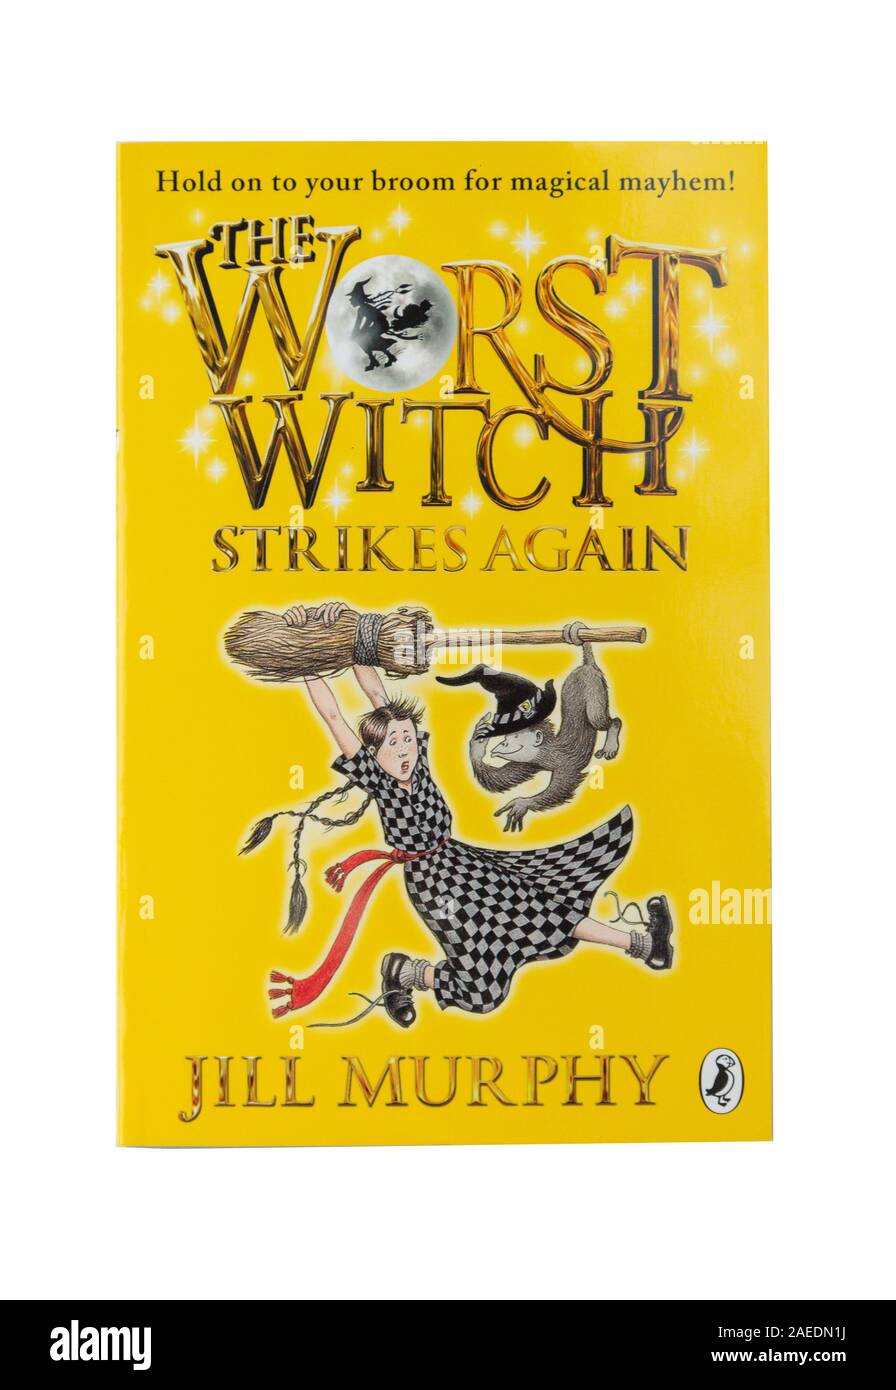 "La pire sorcière frappe à nouveau" le livre d'enfants de Jill Murphy, Greater London, Angleterre, Royaume-Uni Banque D'Images